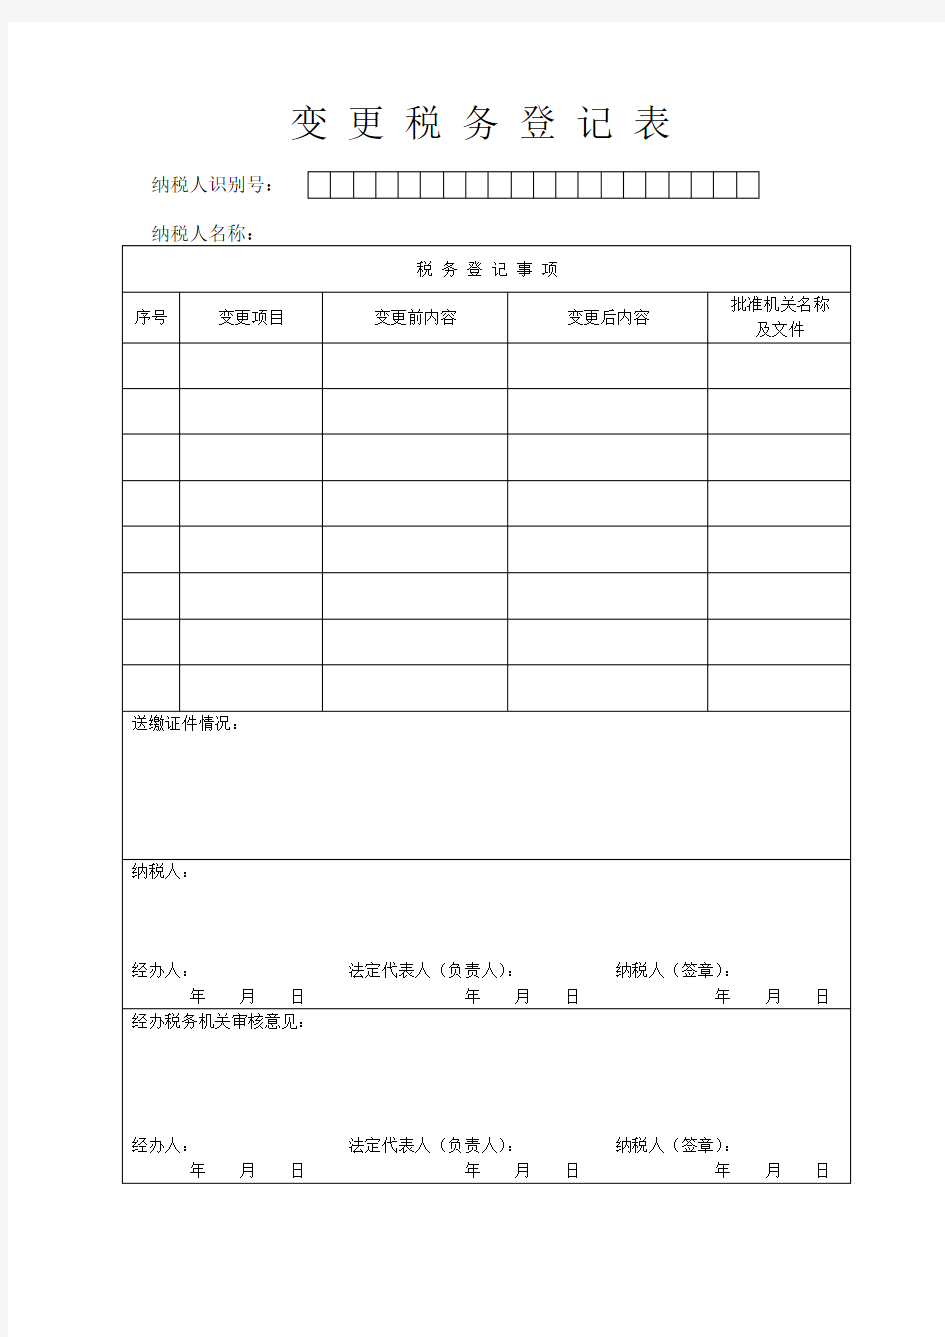 变 更 税 务 登 记 表 - 广东省国家税务局